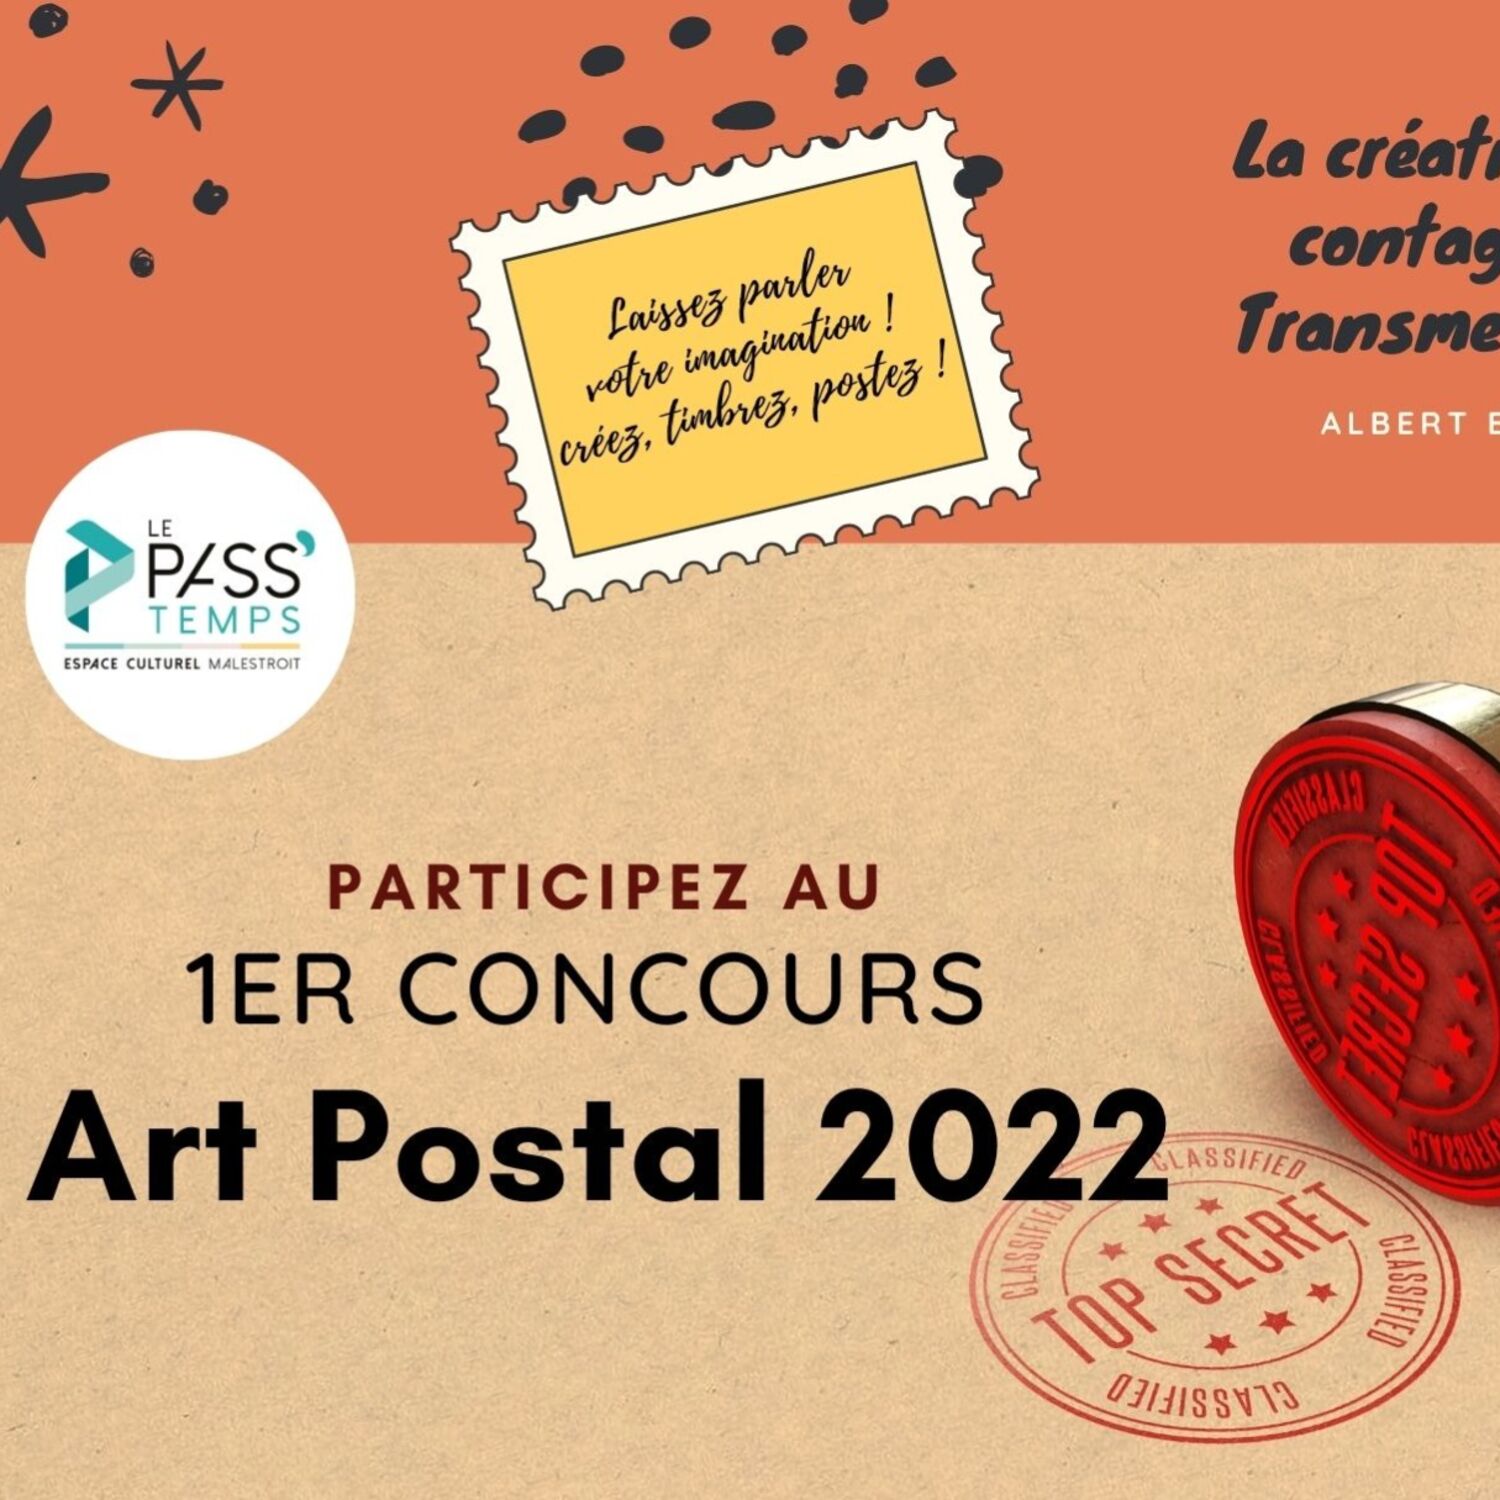 Découvrez "l'Art Postal" grâce à un concours organisé à Malestroit !